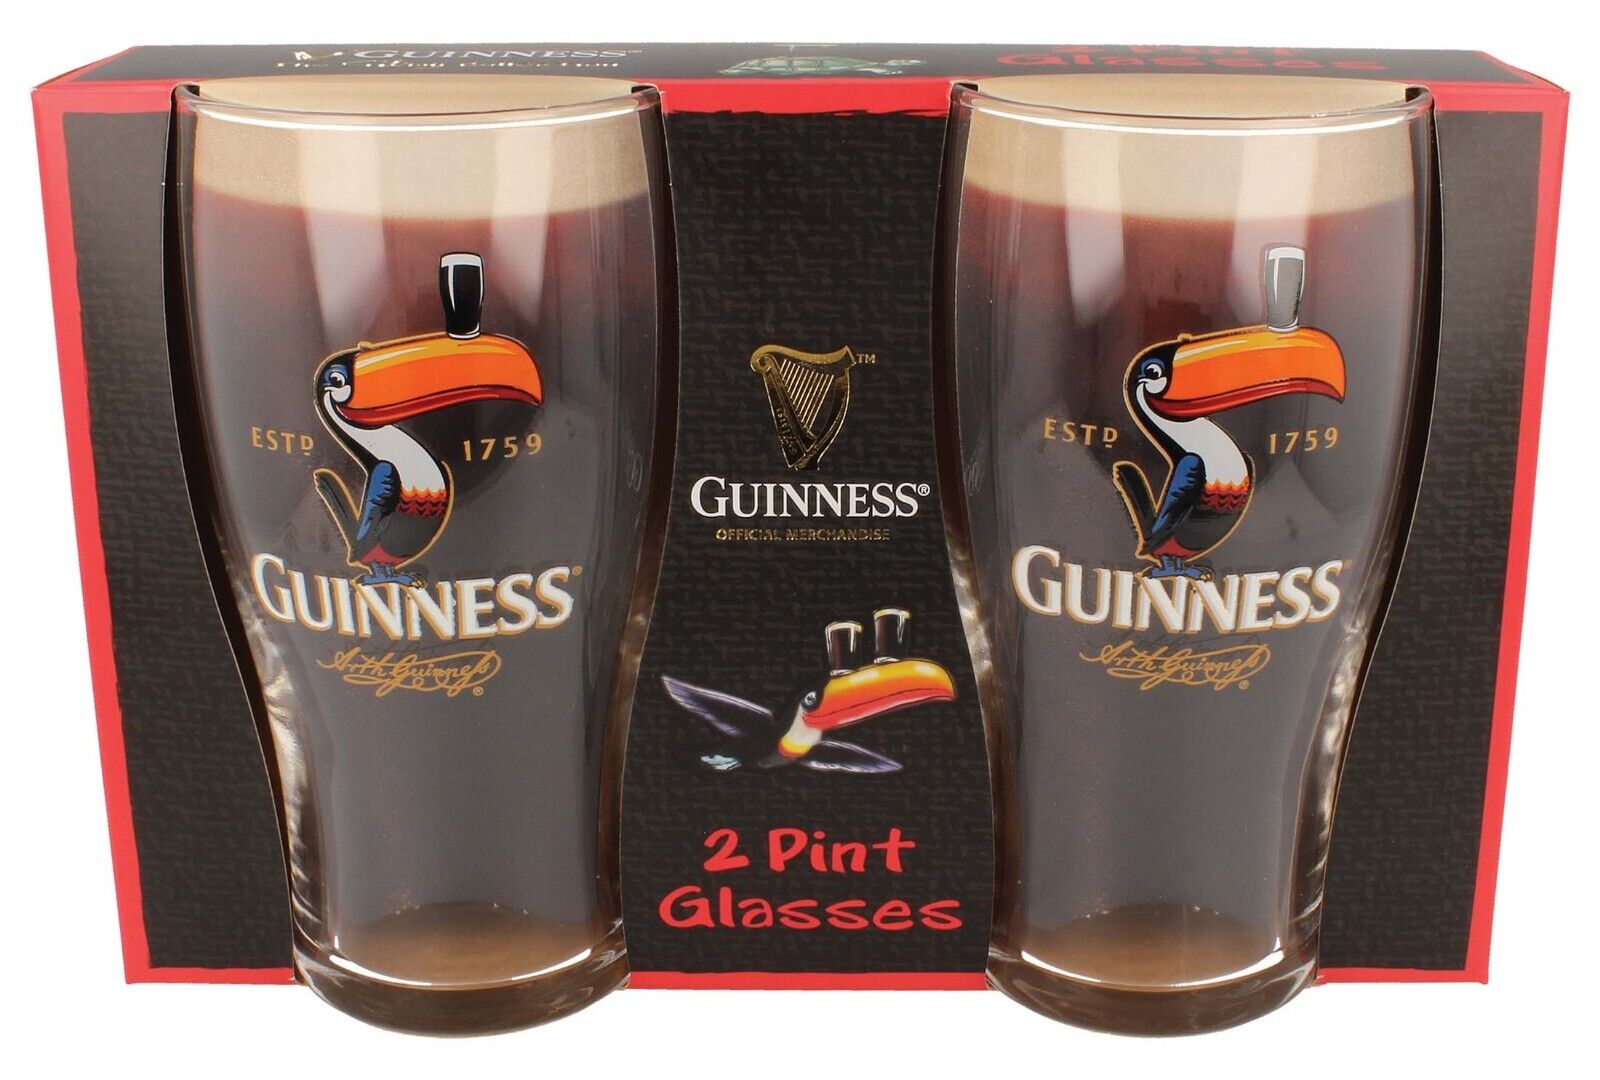 Guinness Toucan Design Pint Glasses pack of 2. Licensed Guinness product